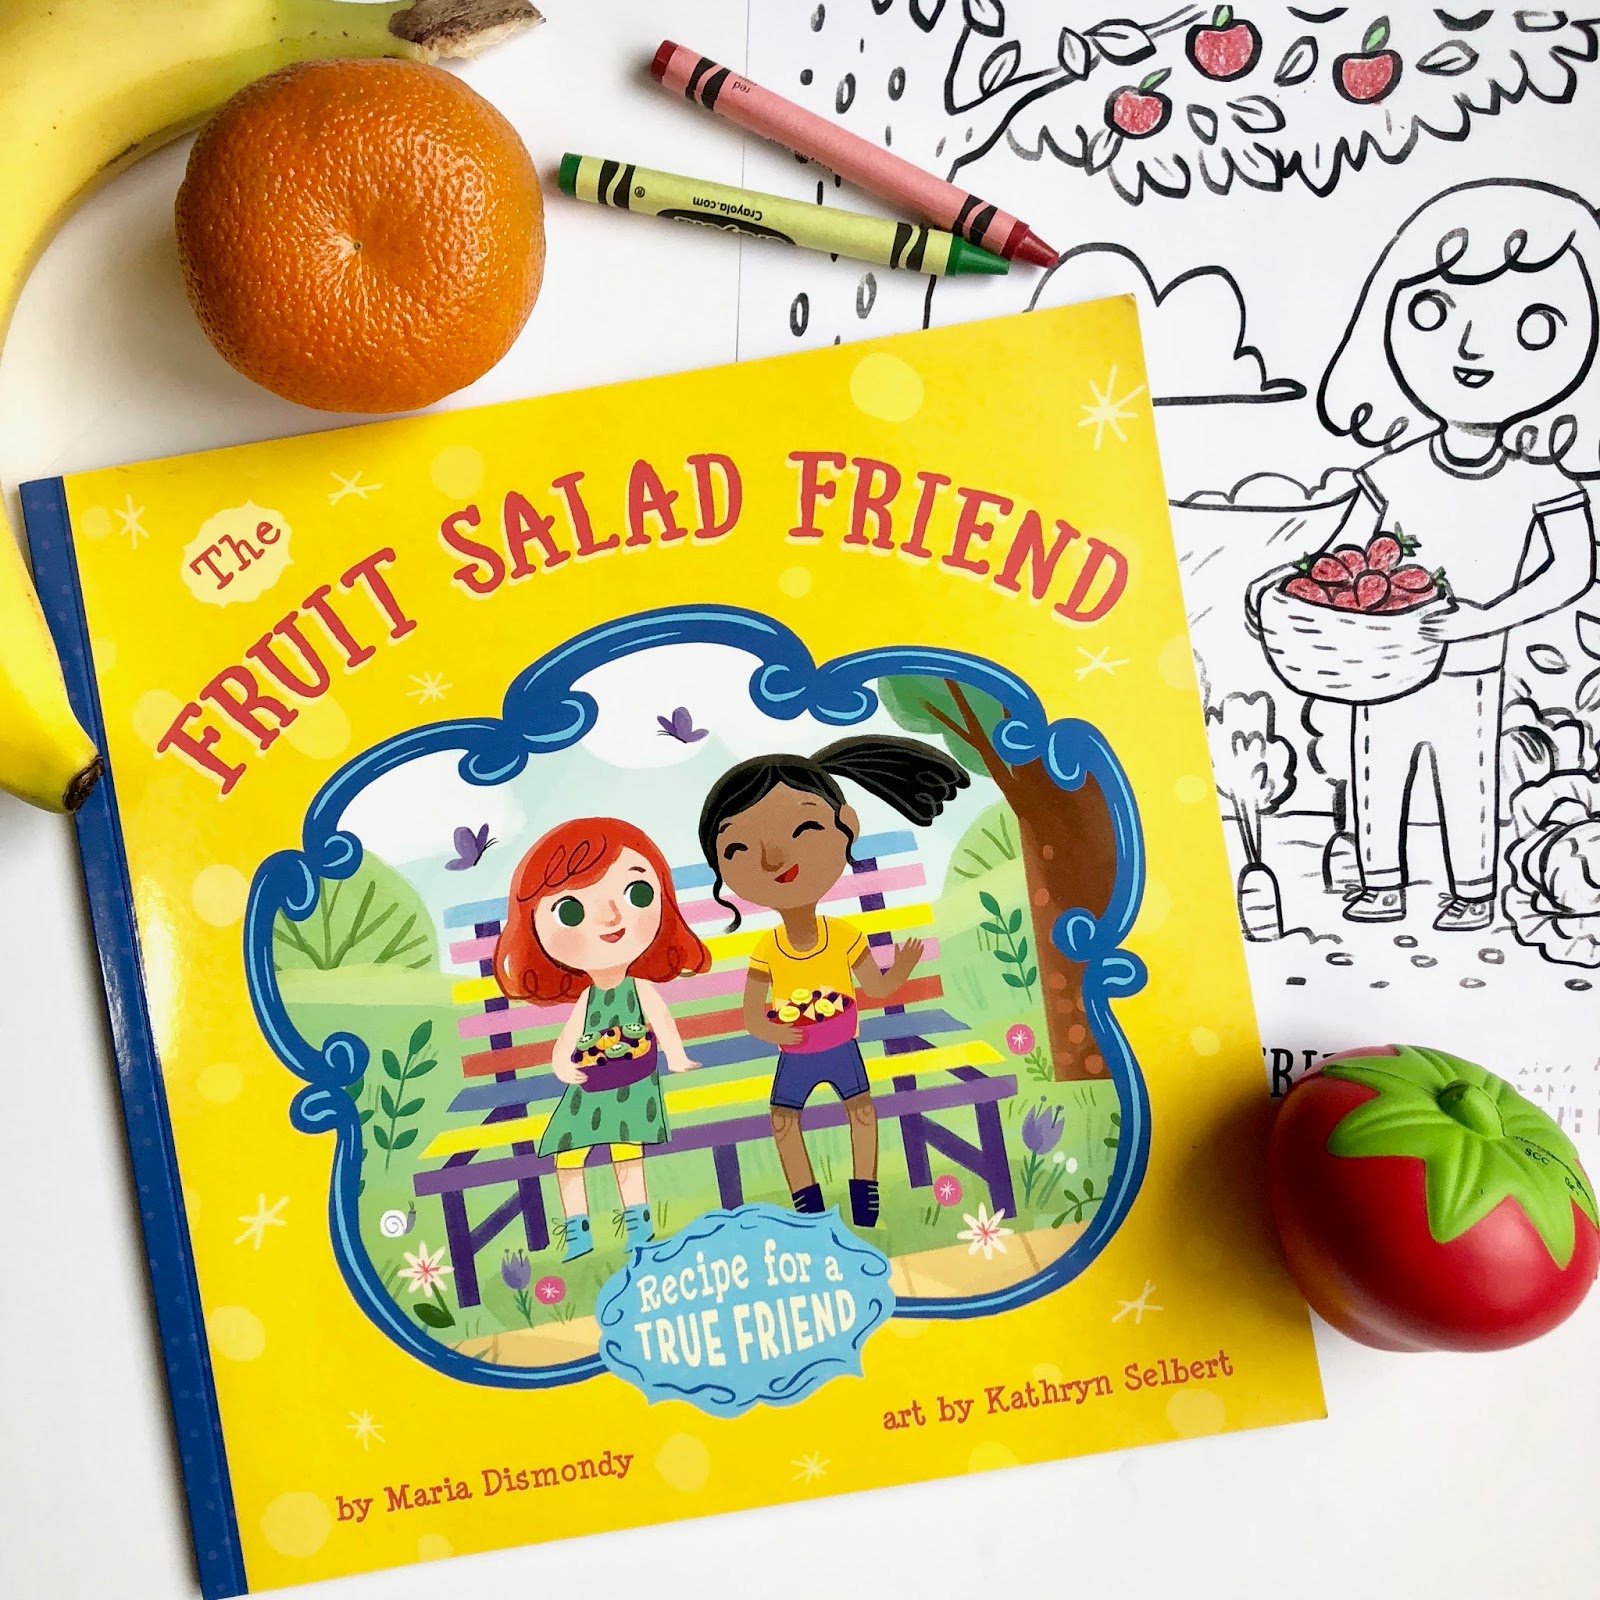 Fruit Salad Book